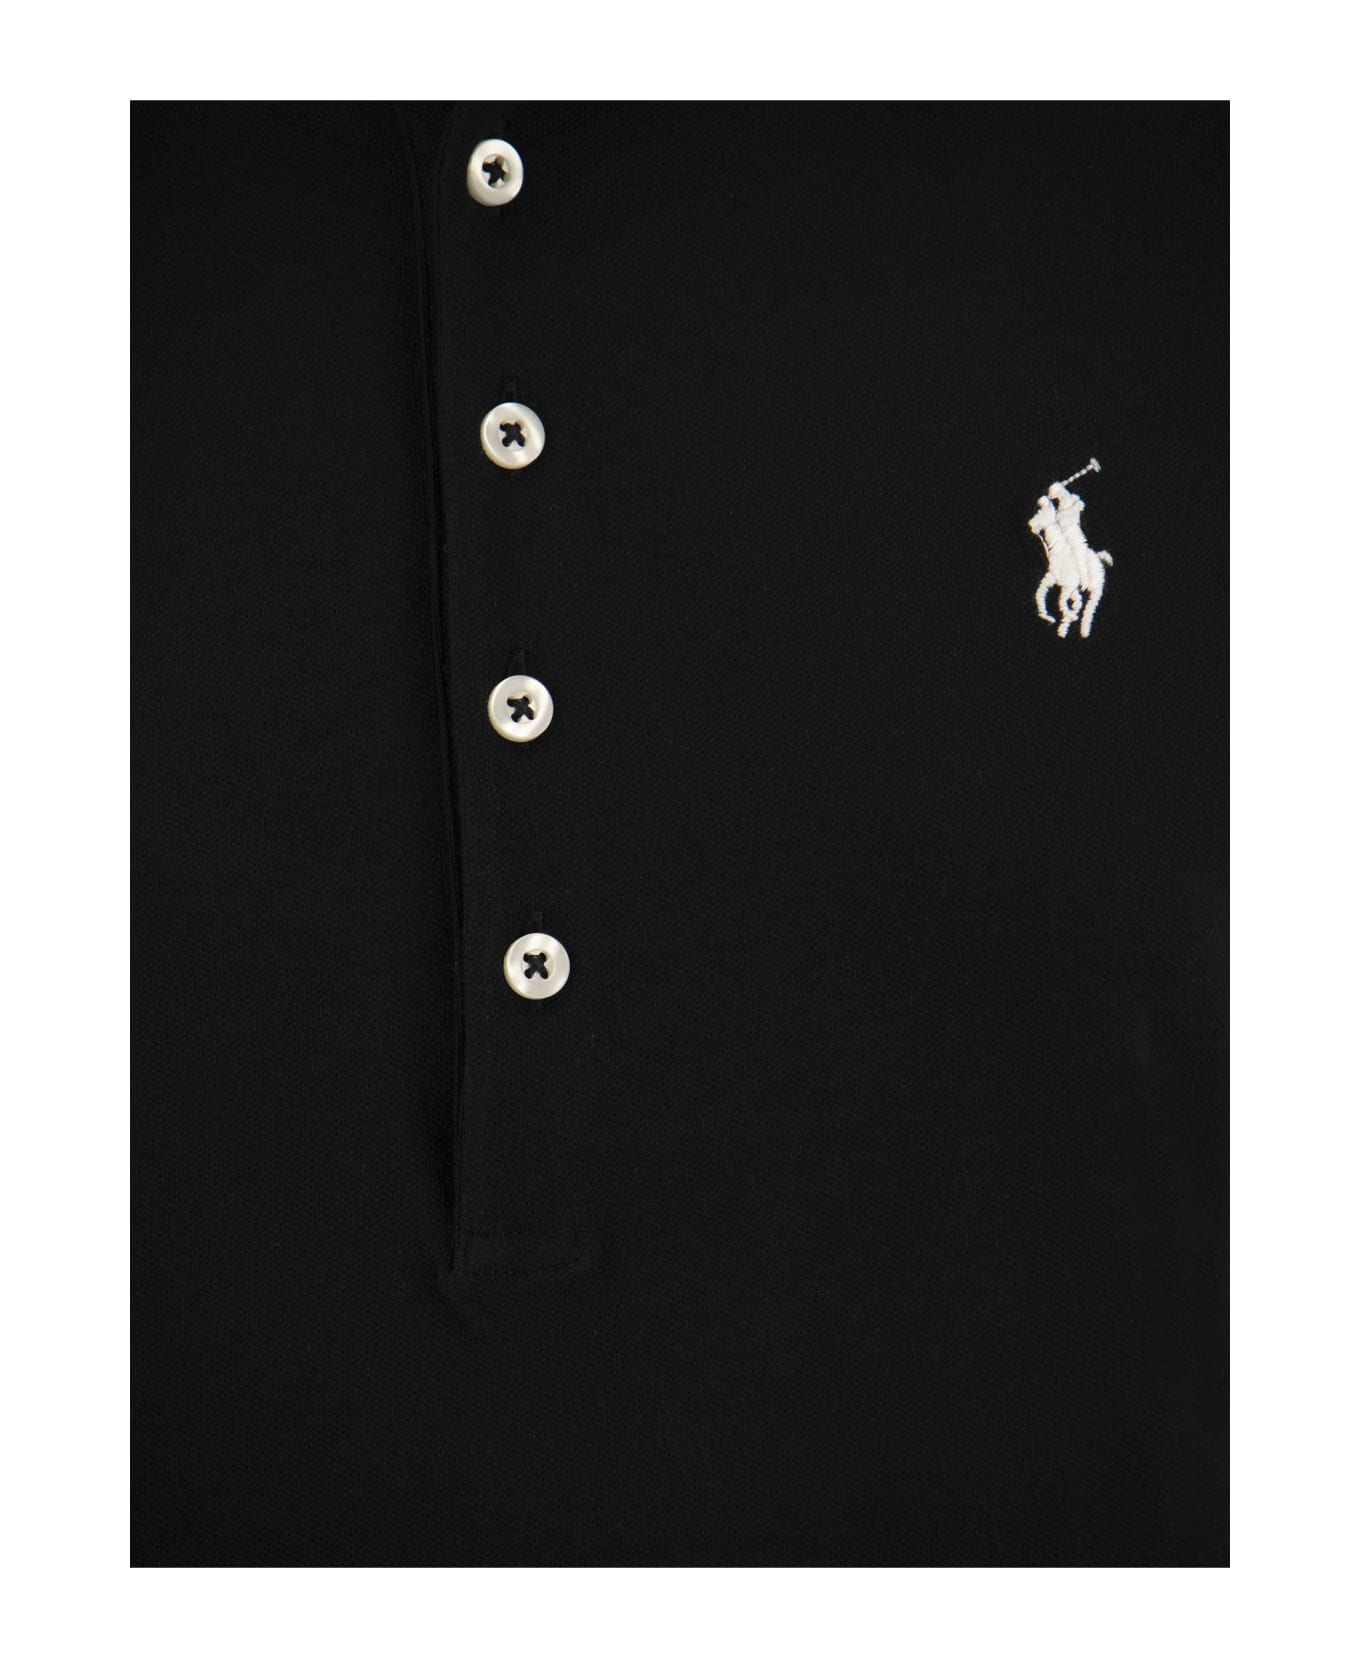 Ralph Lauren Stretch Cotton Piqué Polo Shirt - Black